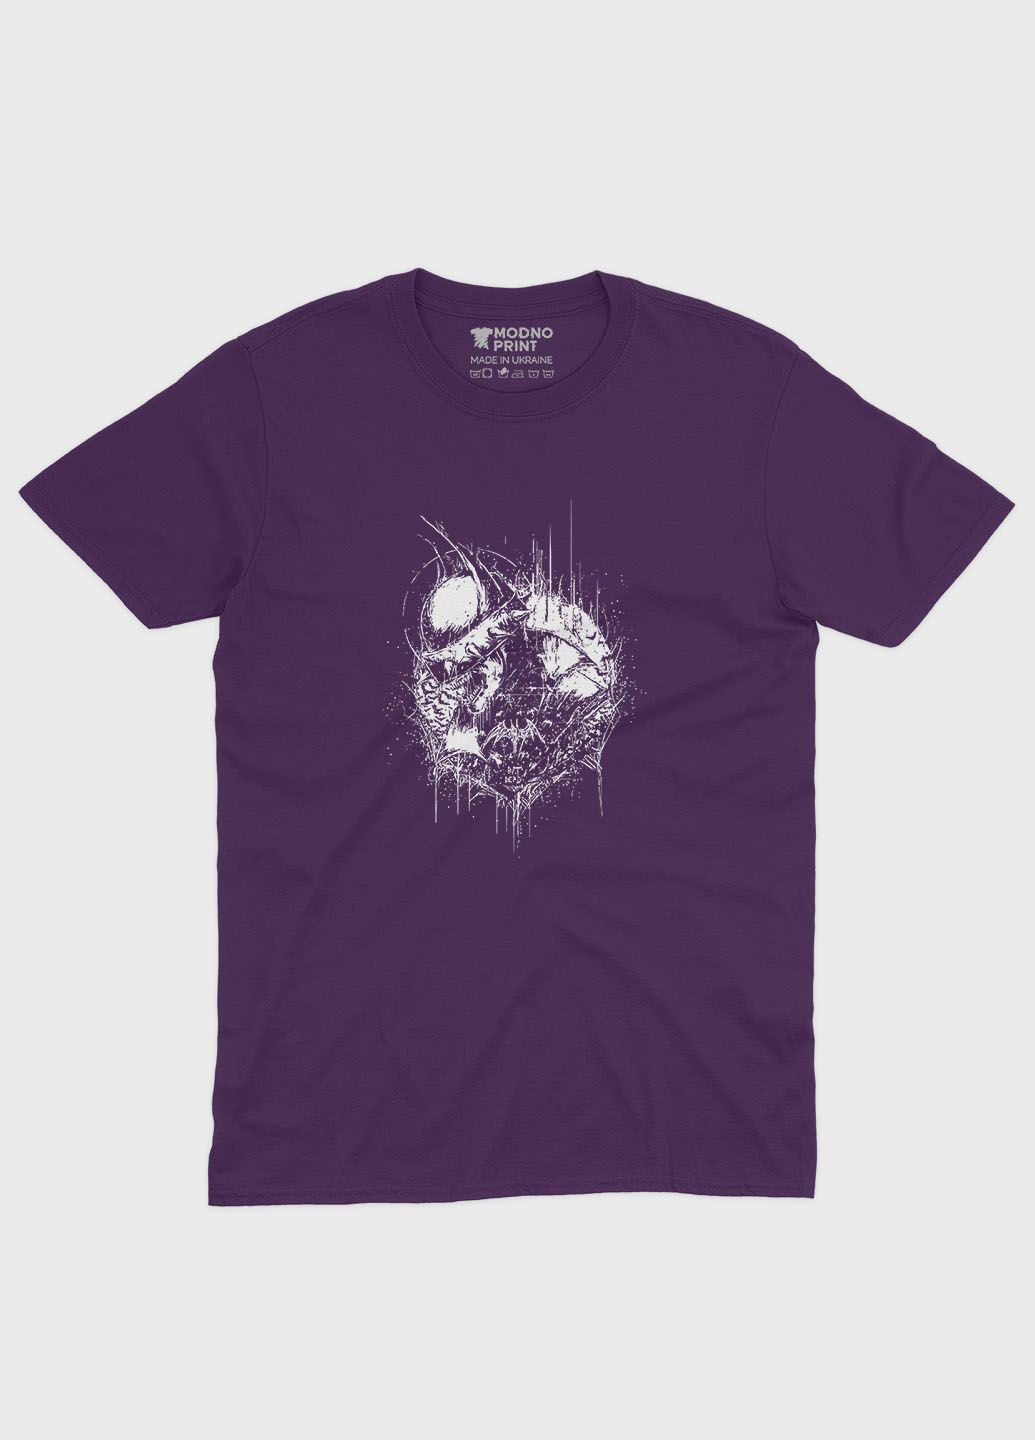 Фиолетовая демисезонная футболка для девочки с принтом супергероя - бэтмен (ts001-1-dby-006-003-044-g) Modno